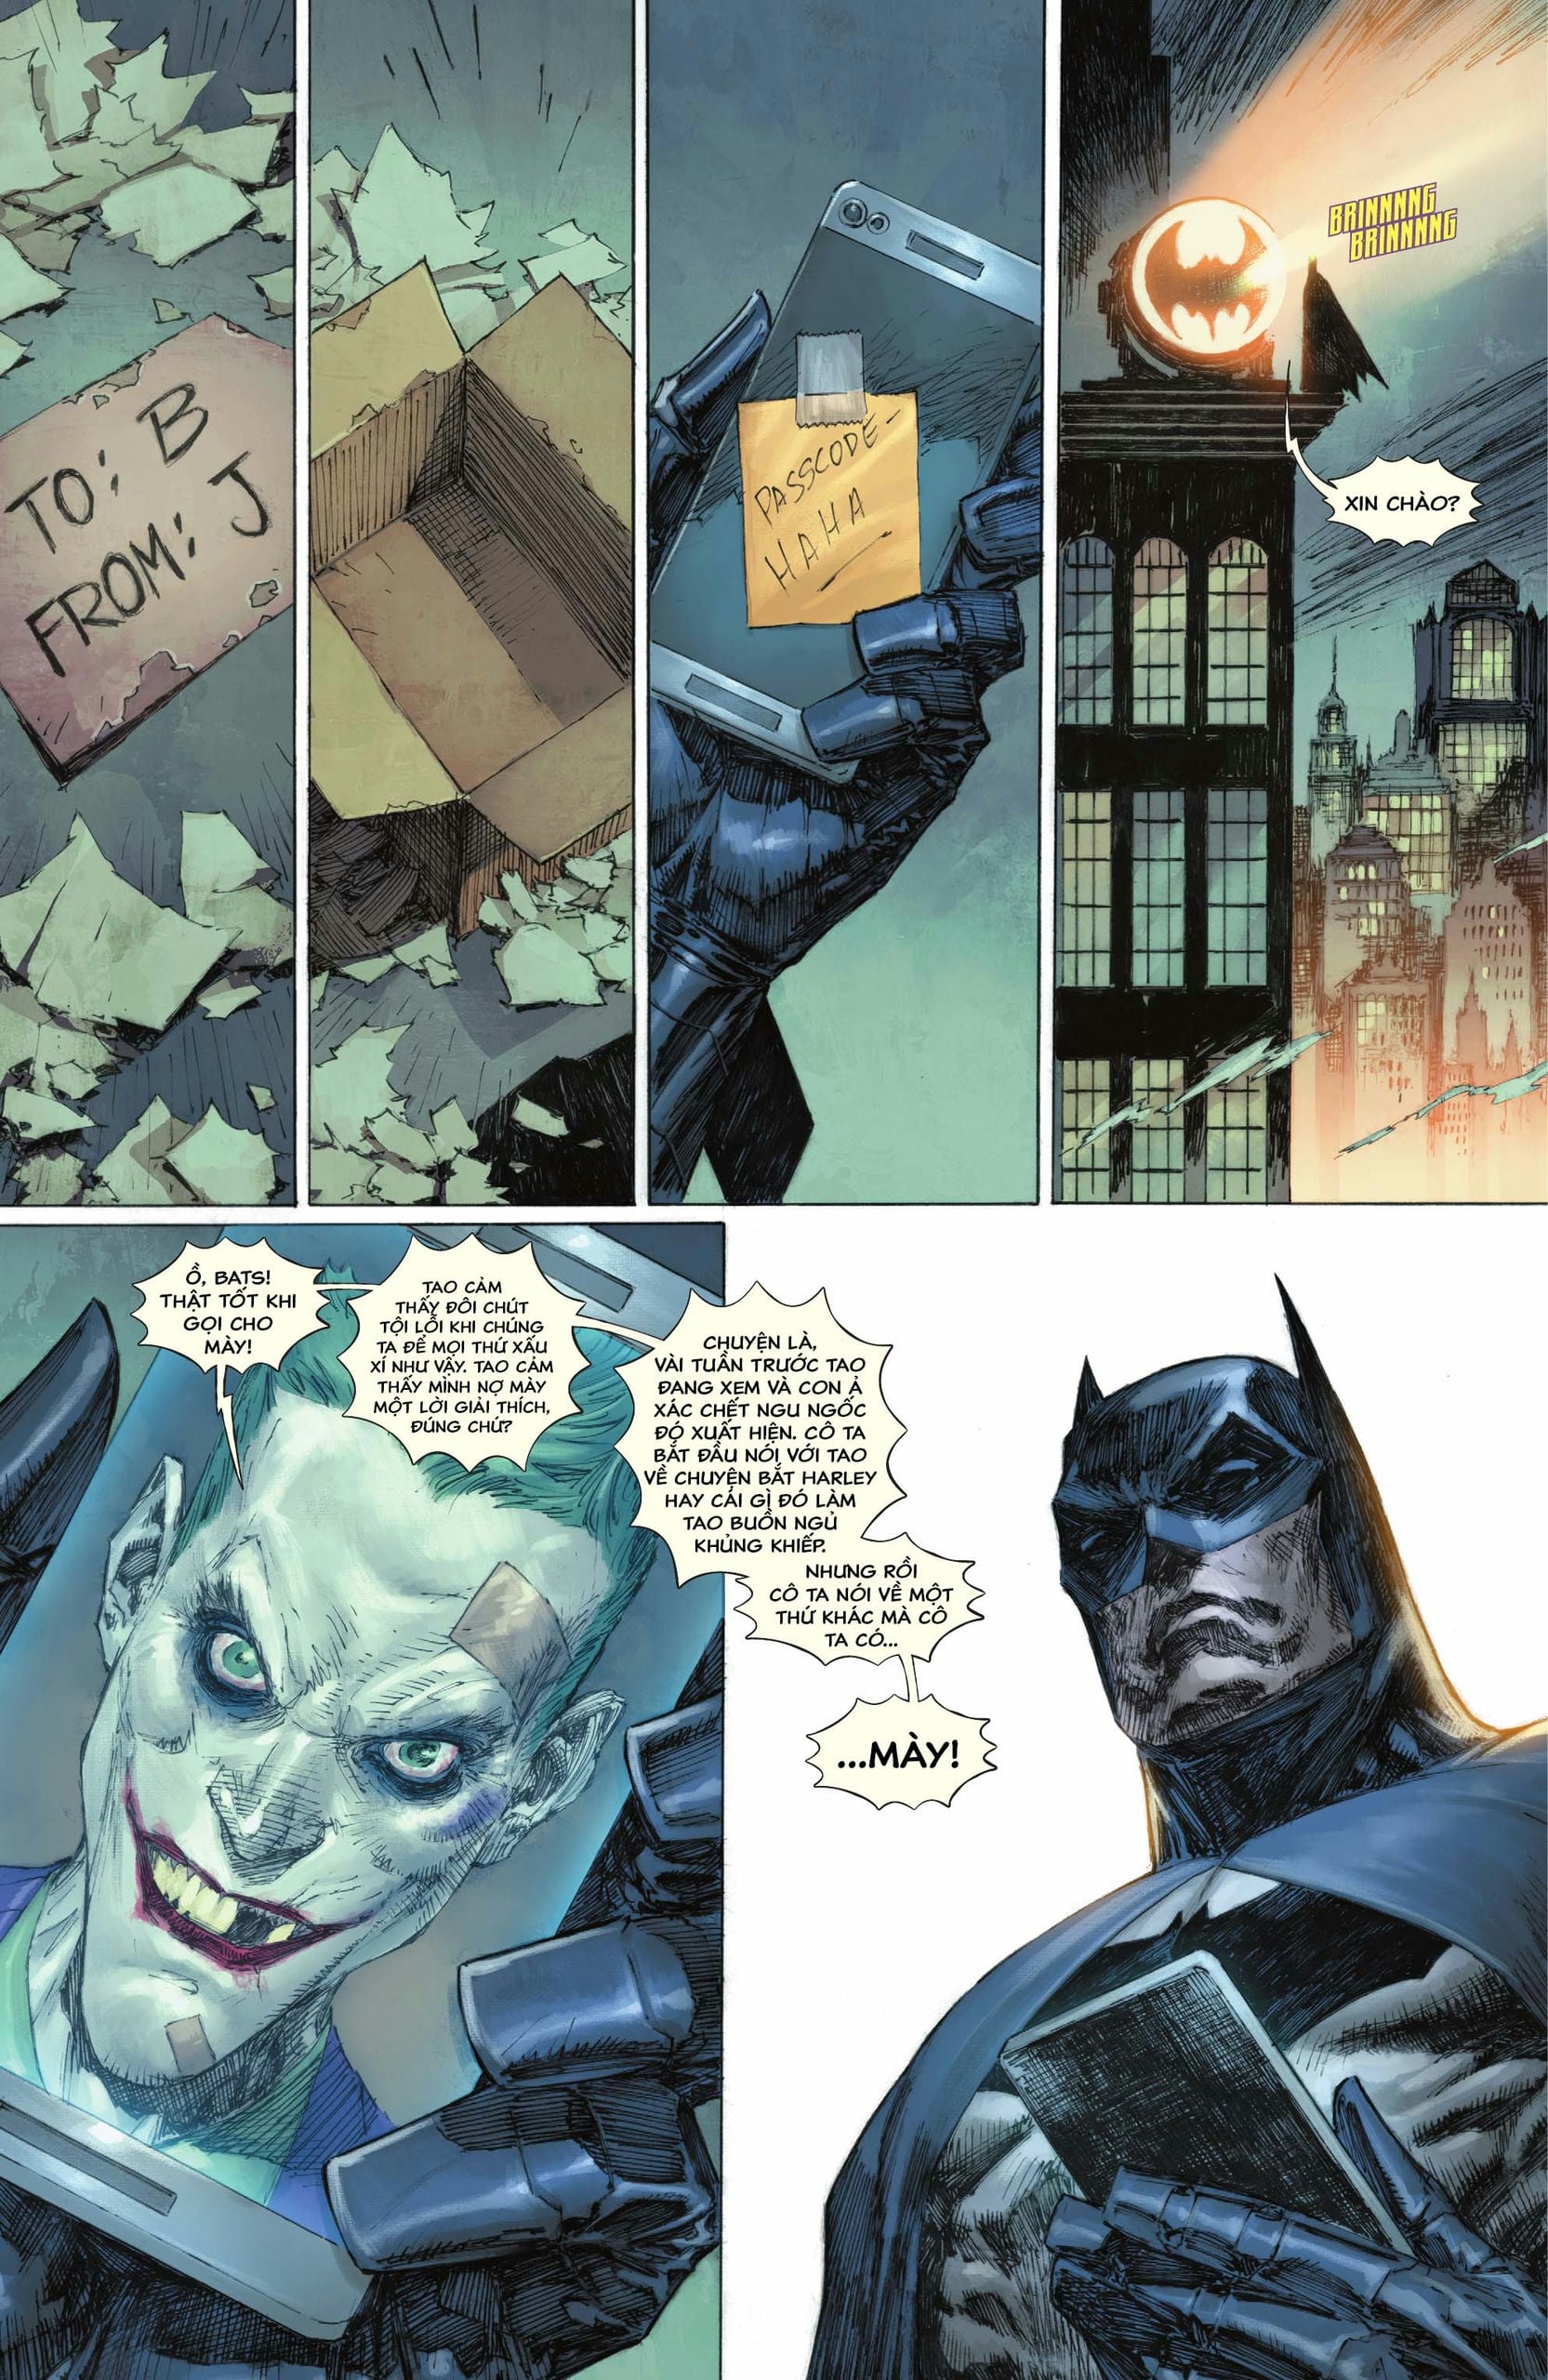 https://langgeek.net/wp-content/webpc-passthru.php?src=https://langgeek.net/wp-content/uploads/2023/05/Batman-_-The-Joker-The-Deadly-Duo-2022-007-022.jpg&nocache=1